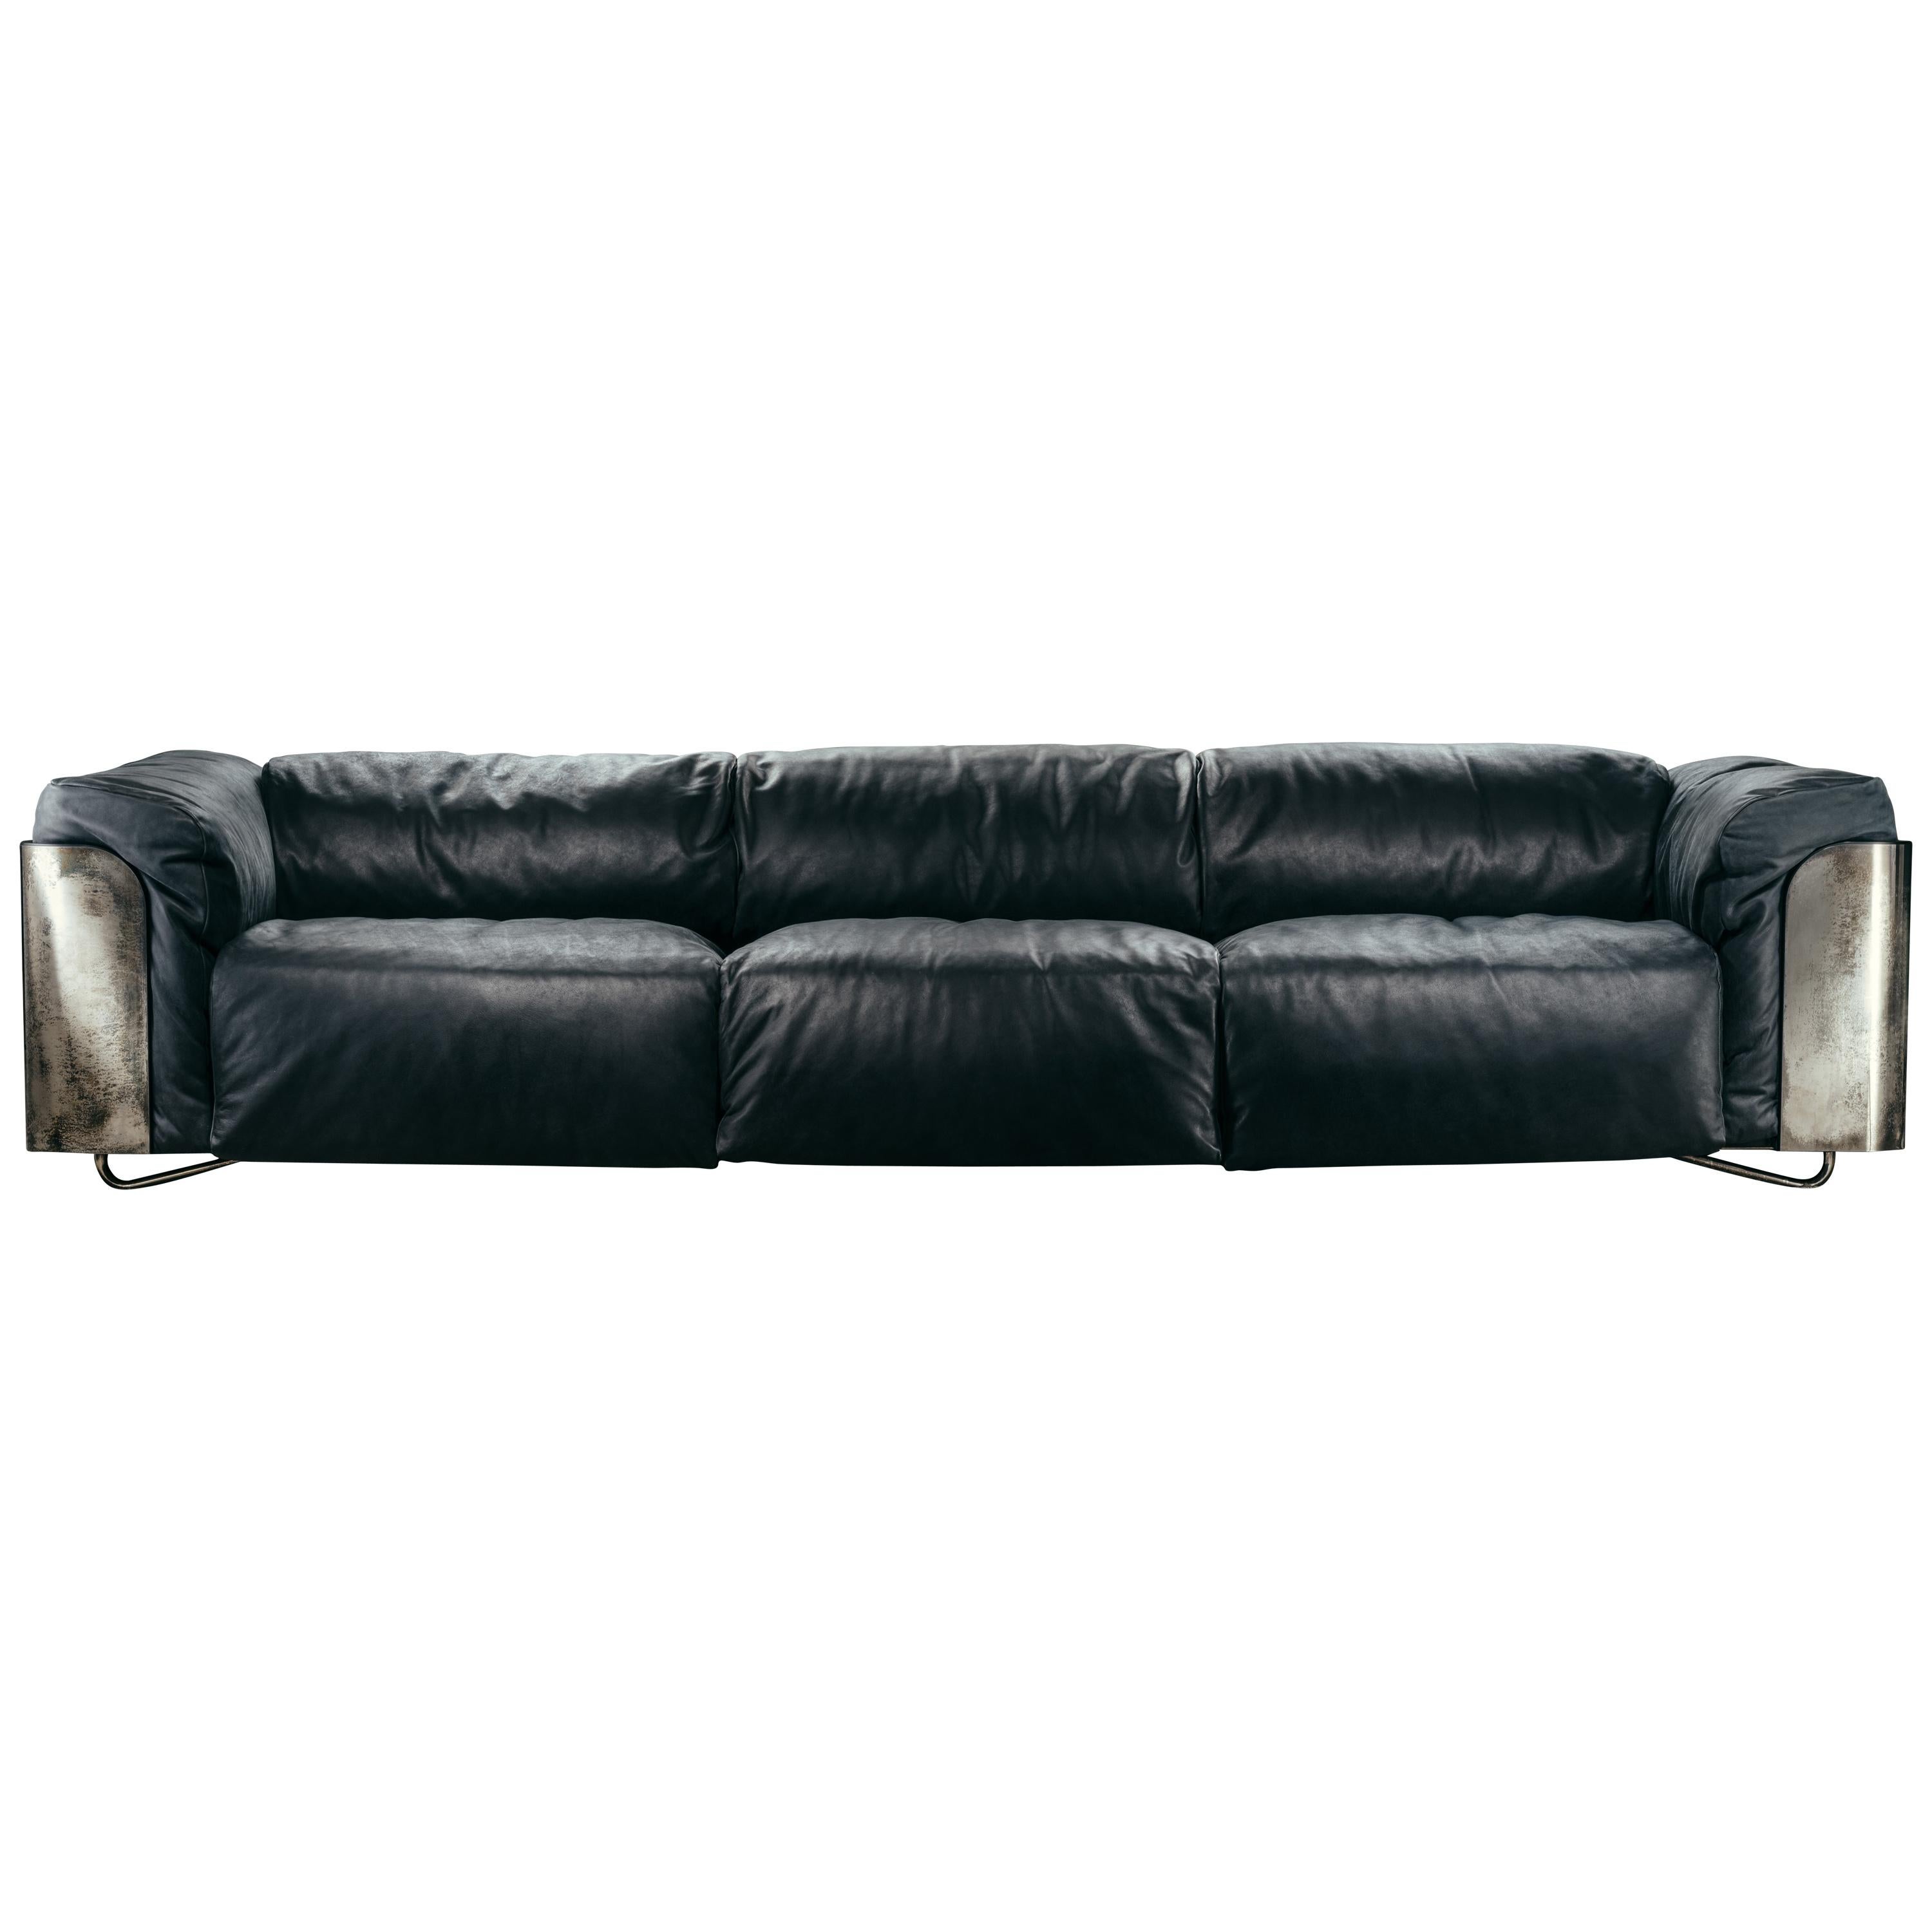 Le canapé Saint-germain, disponible en version 2 ou 3 places, est composé d'un panneau en bois noir mat, recouvert dans la partie externe d'un placage métallique, avec une bordure paddée dans le même revêtement que l'assise, par ailleurs en bois